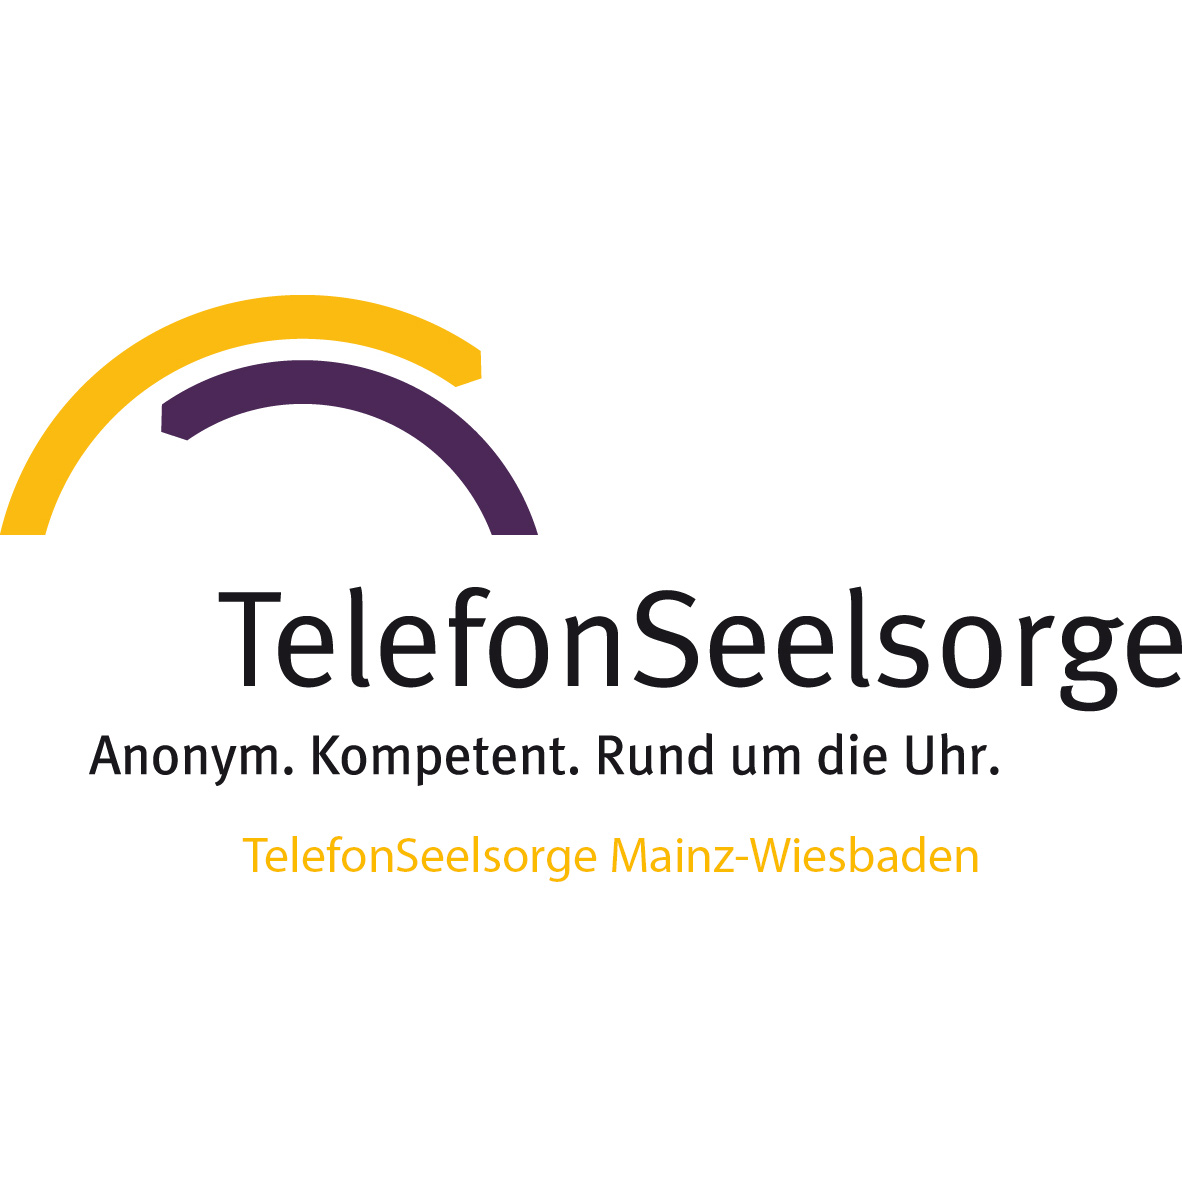 TelefonSeelsorge  Mainz-Wiesbaden (c) TelefonSeelsorge